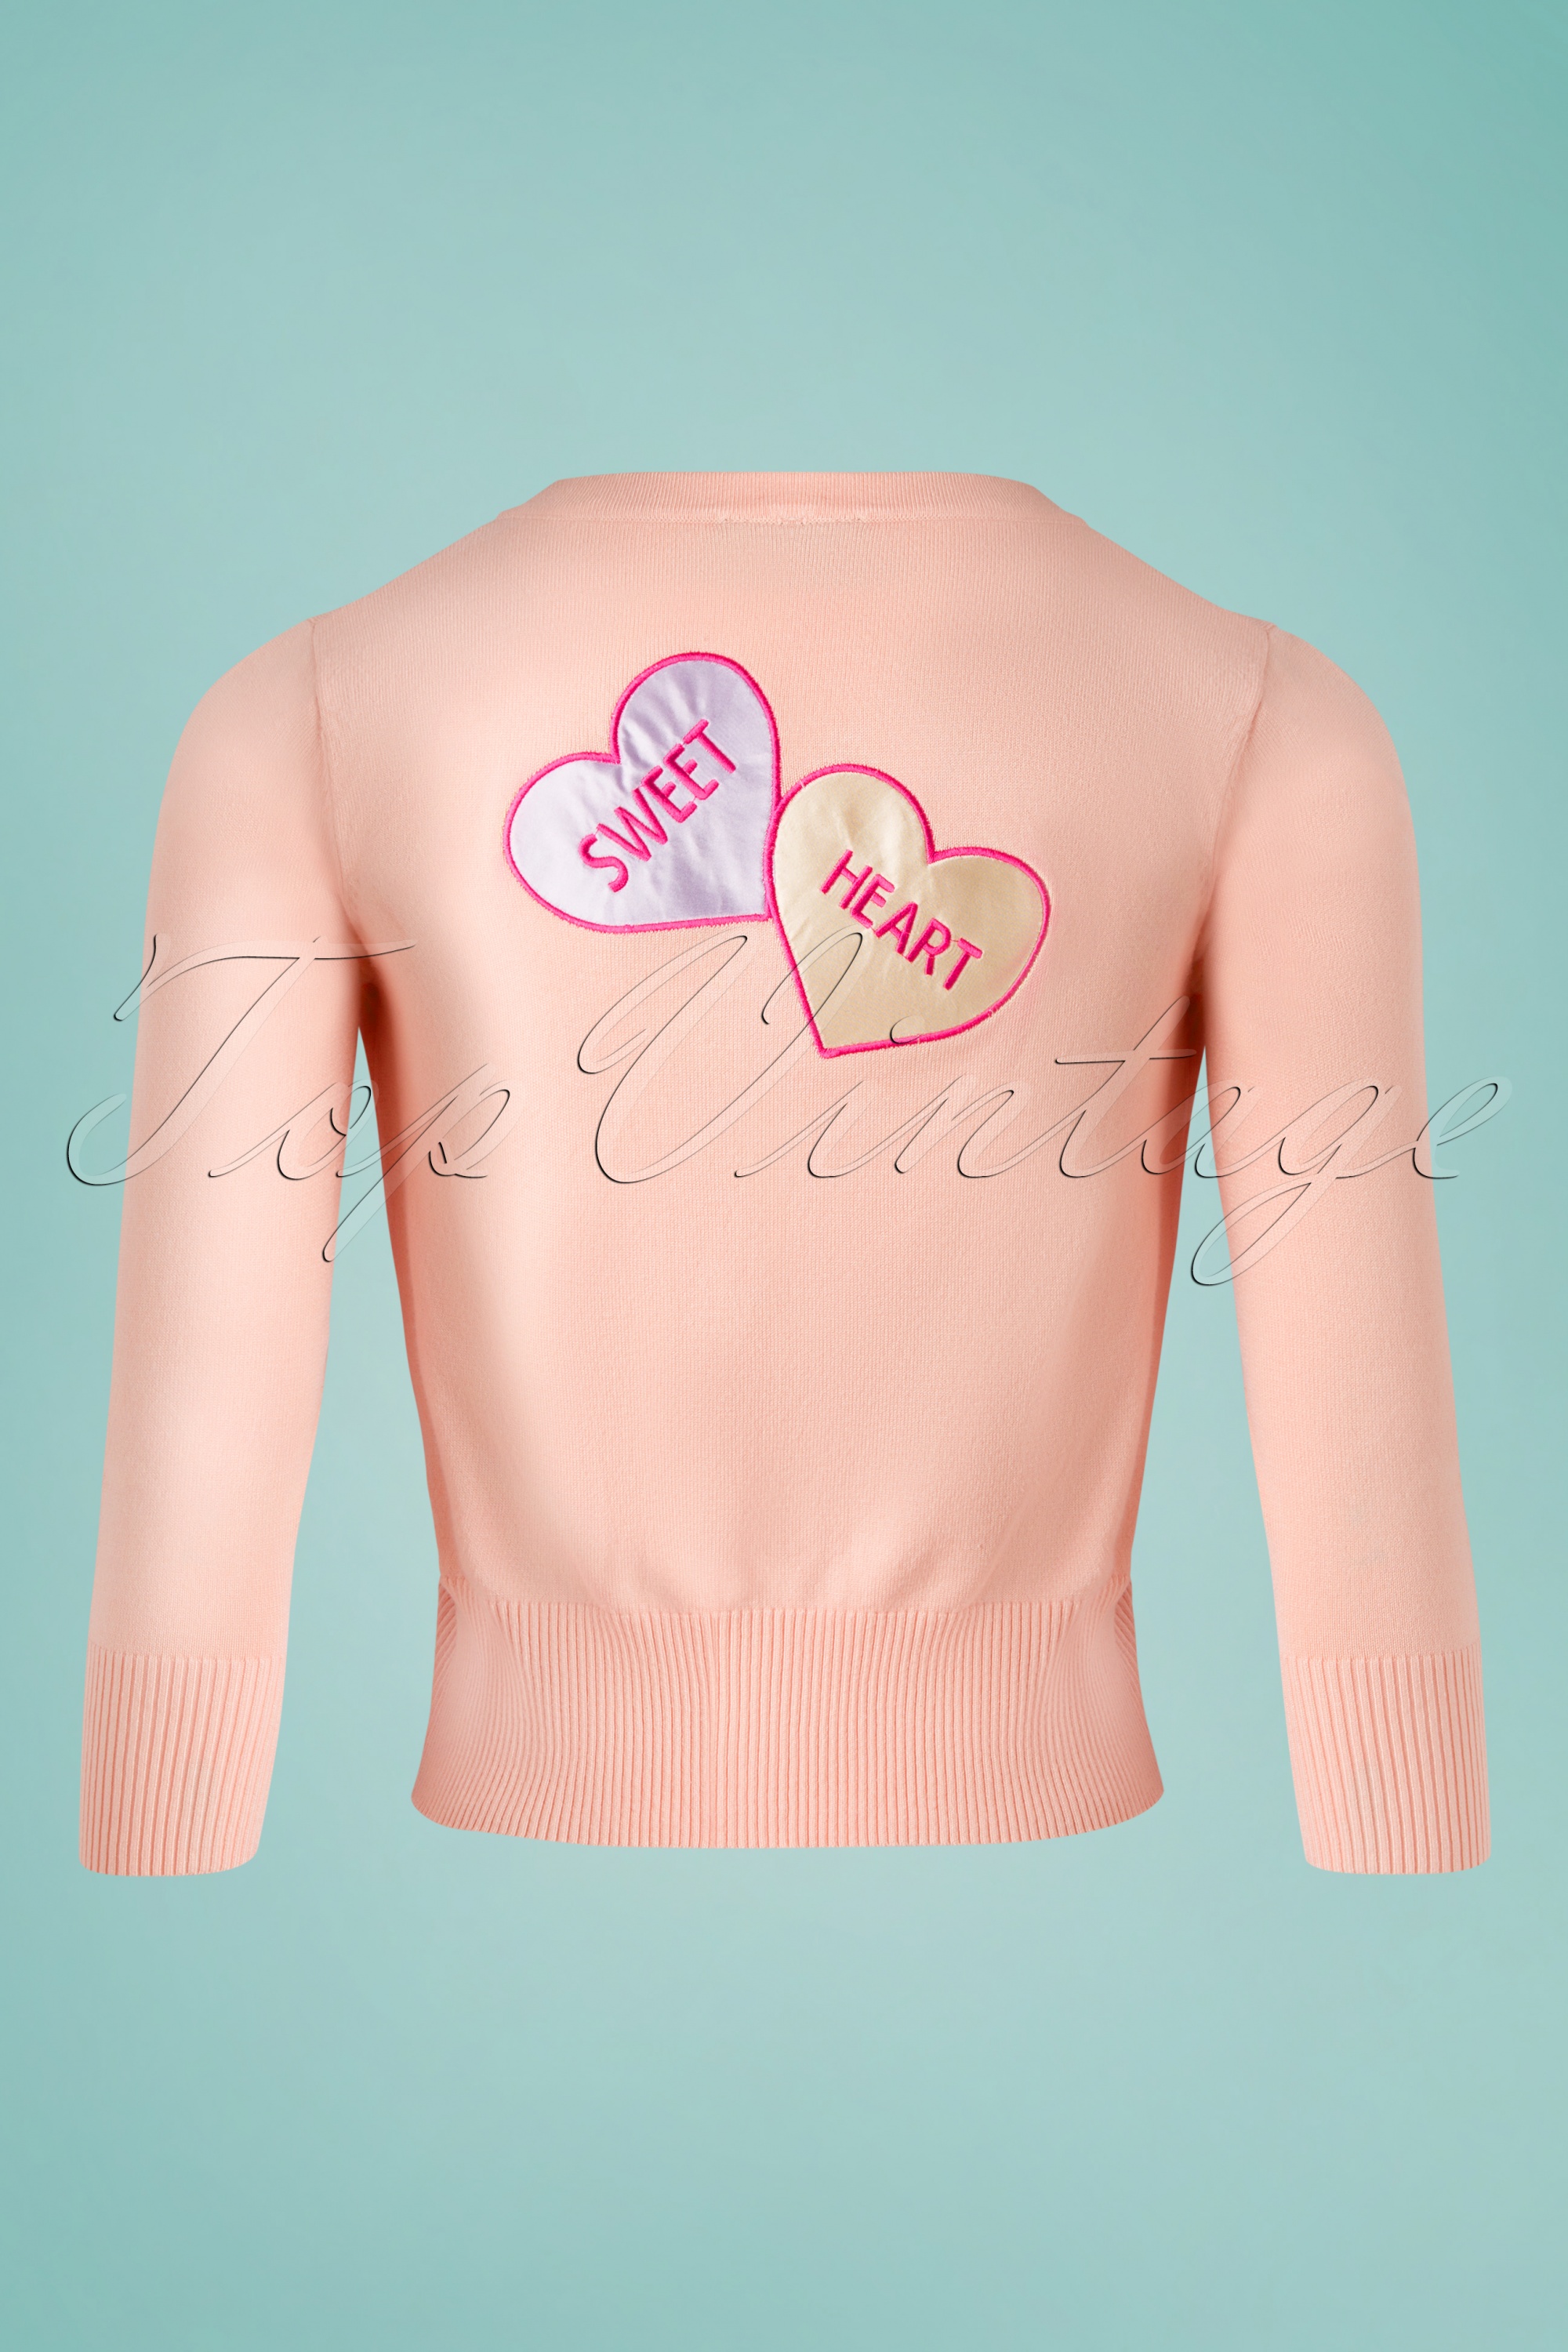 Vixen - Unreal Redheads Collaboration ~ Kim Love Heart vest in roze 2